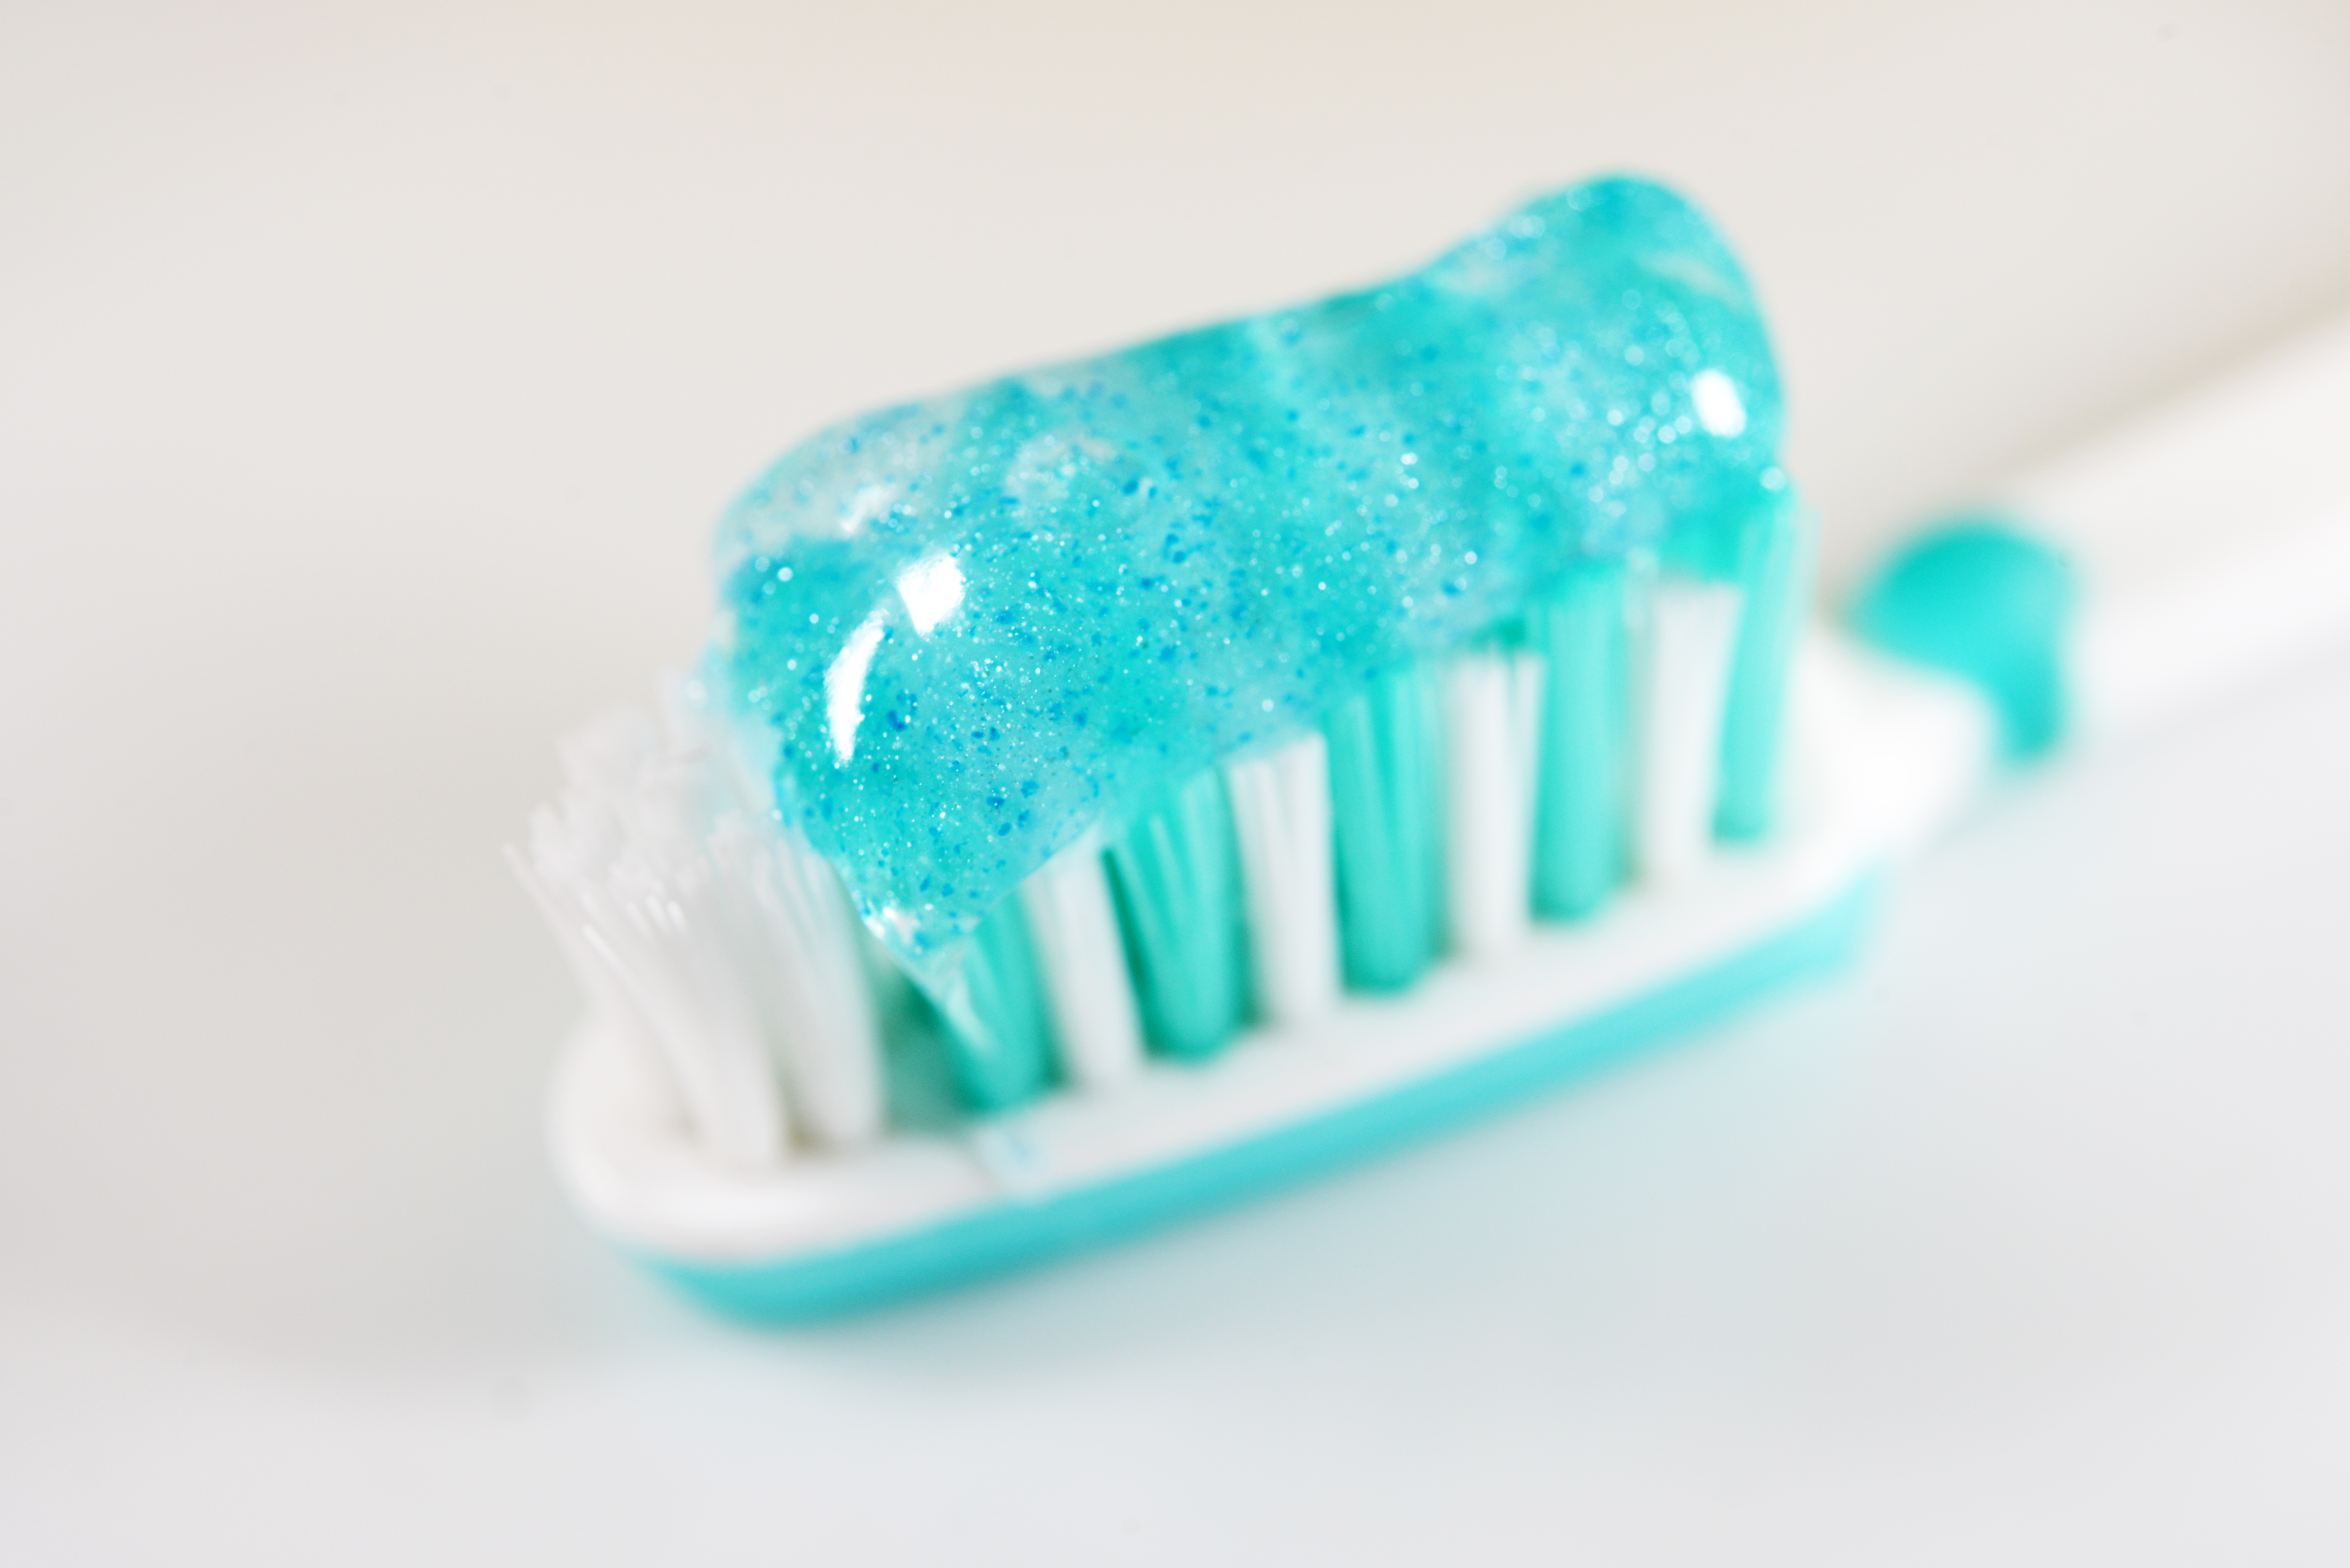 Mikroplastik in Zahnpasta auf einer Zahnbürste